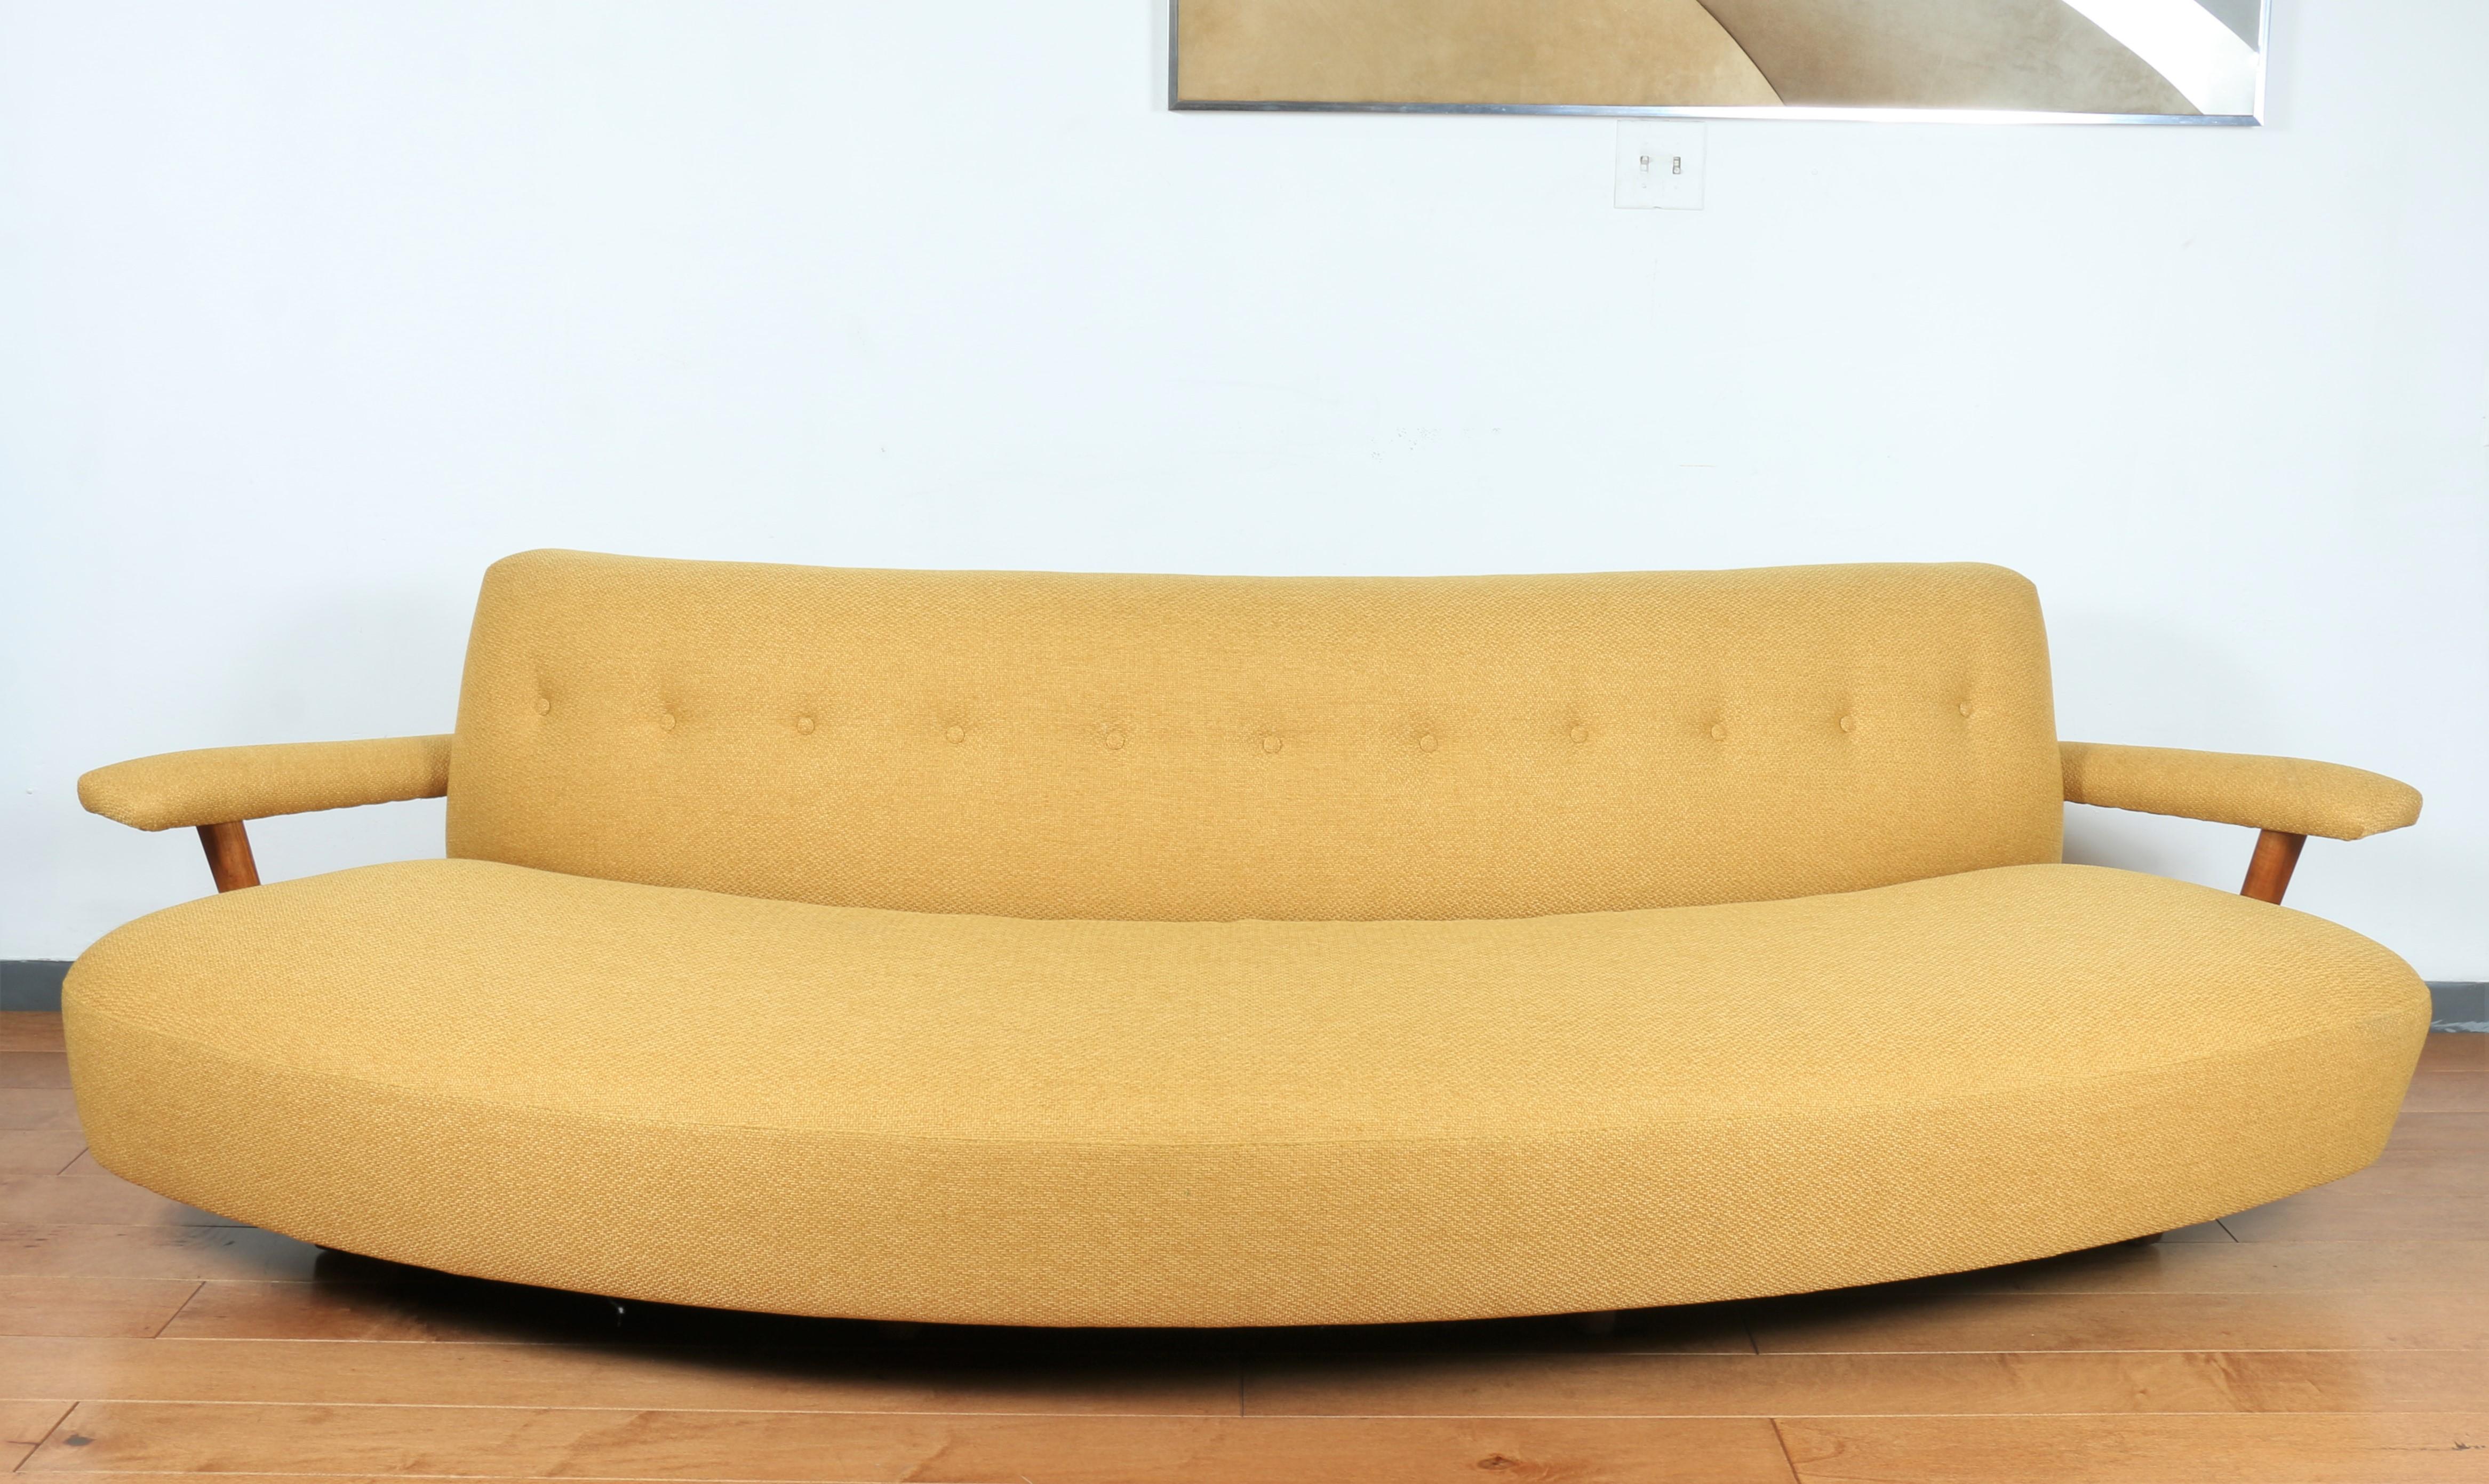 Mid Century geschwungenes gelbes Sofa mit Armlehne aus Eichenholz. In sehr gutem Zustand, keine Flecken oder Markierungen. Neue Polsterung wurde angefertigt. Amerikanisches Sofa aus den 1950er Jahren.